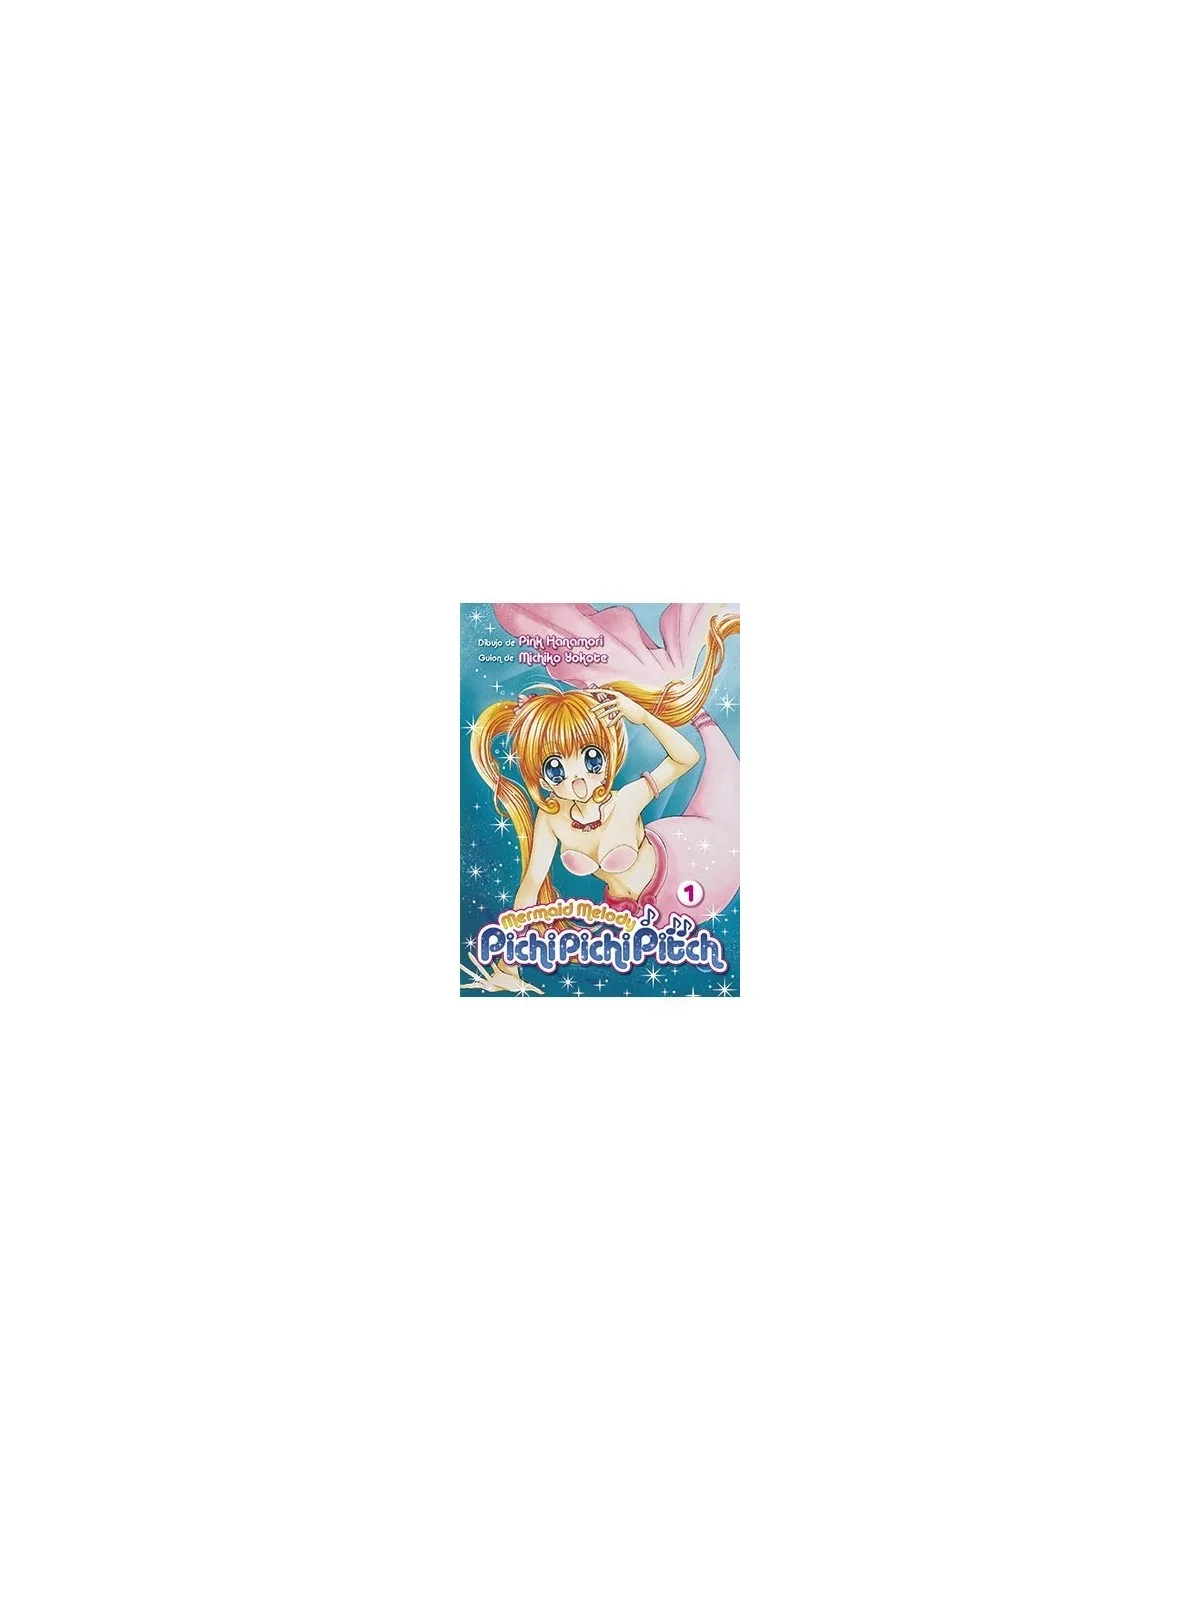 Comprar Mermaid Melody Pichi Pichi Pitch 01 barato al mejor precio 8,5